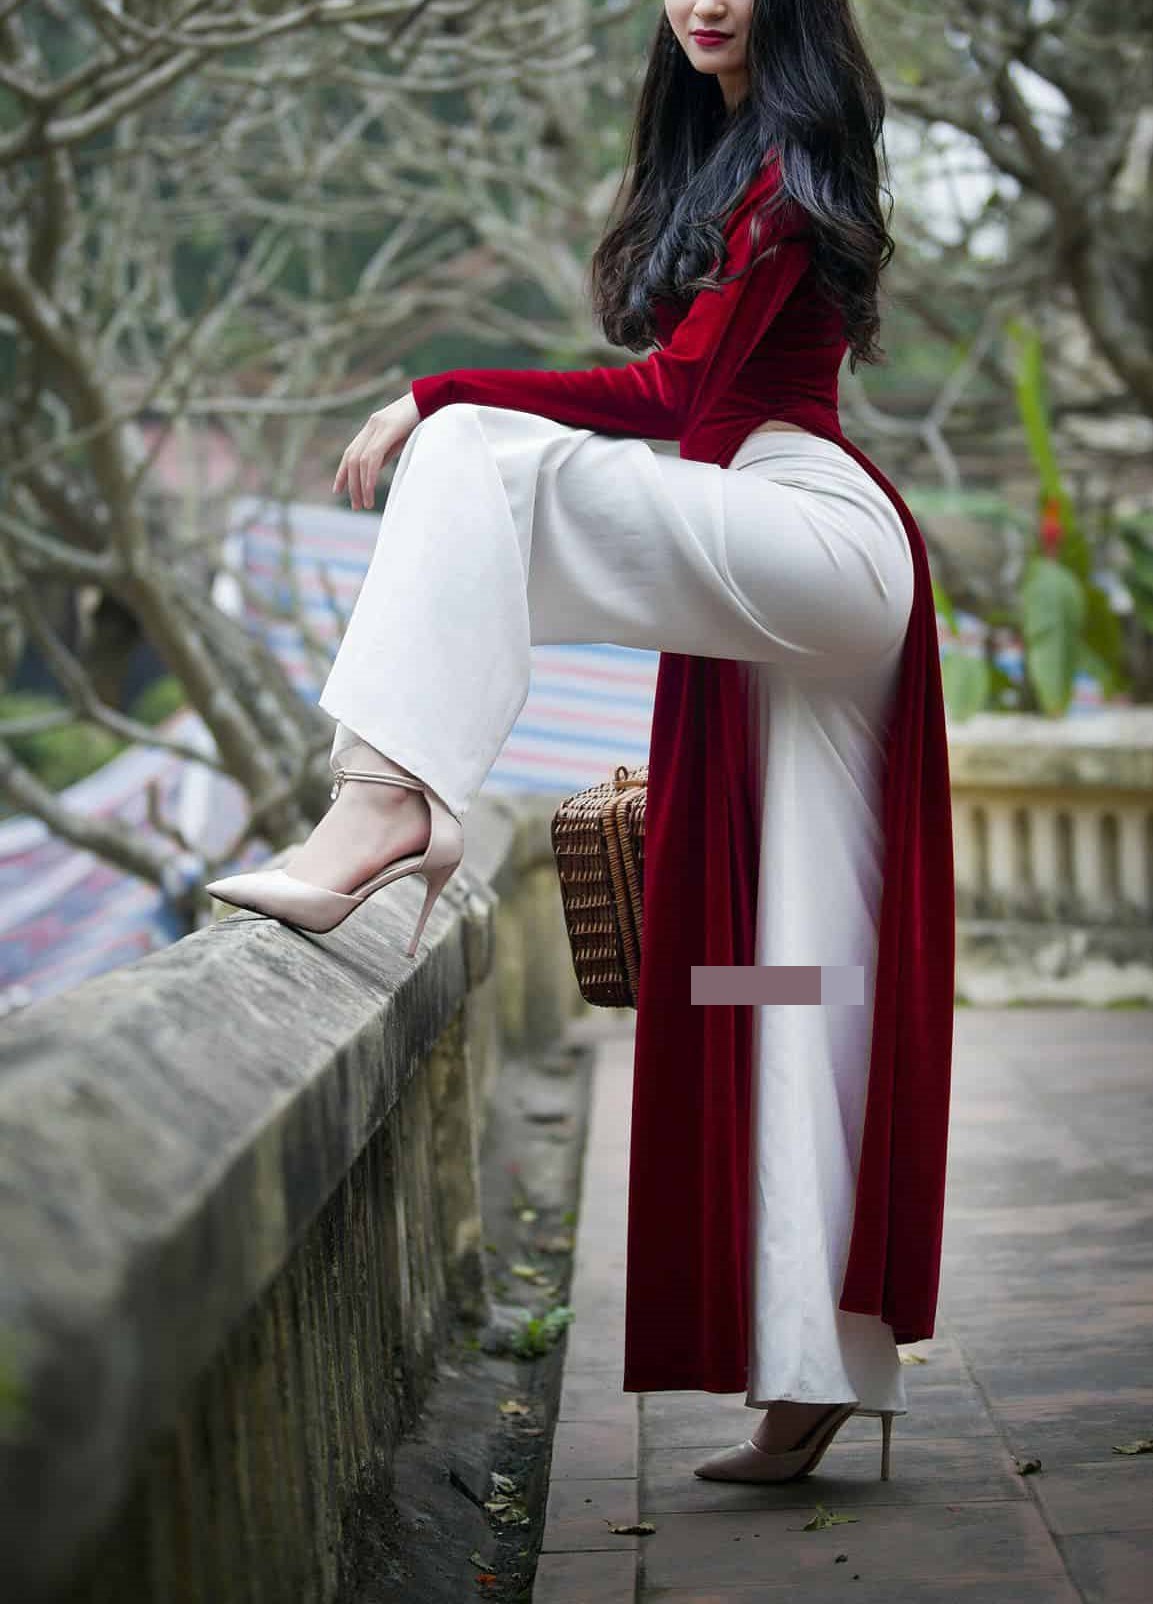 Áo dài truyền thống: Áo dài truyền thống là trang phục đẹp và quý giá của dân tộc Việt Nam. Hãy chiêm ngưỡng những bức ảnh tuyệt đẹp về áo dài, khiến bạn cảm thấy tự hào về vẻ đẹp và nét văn hóa của đất nước.